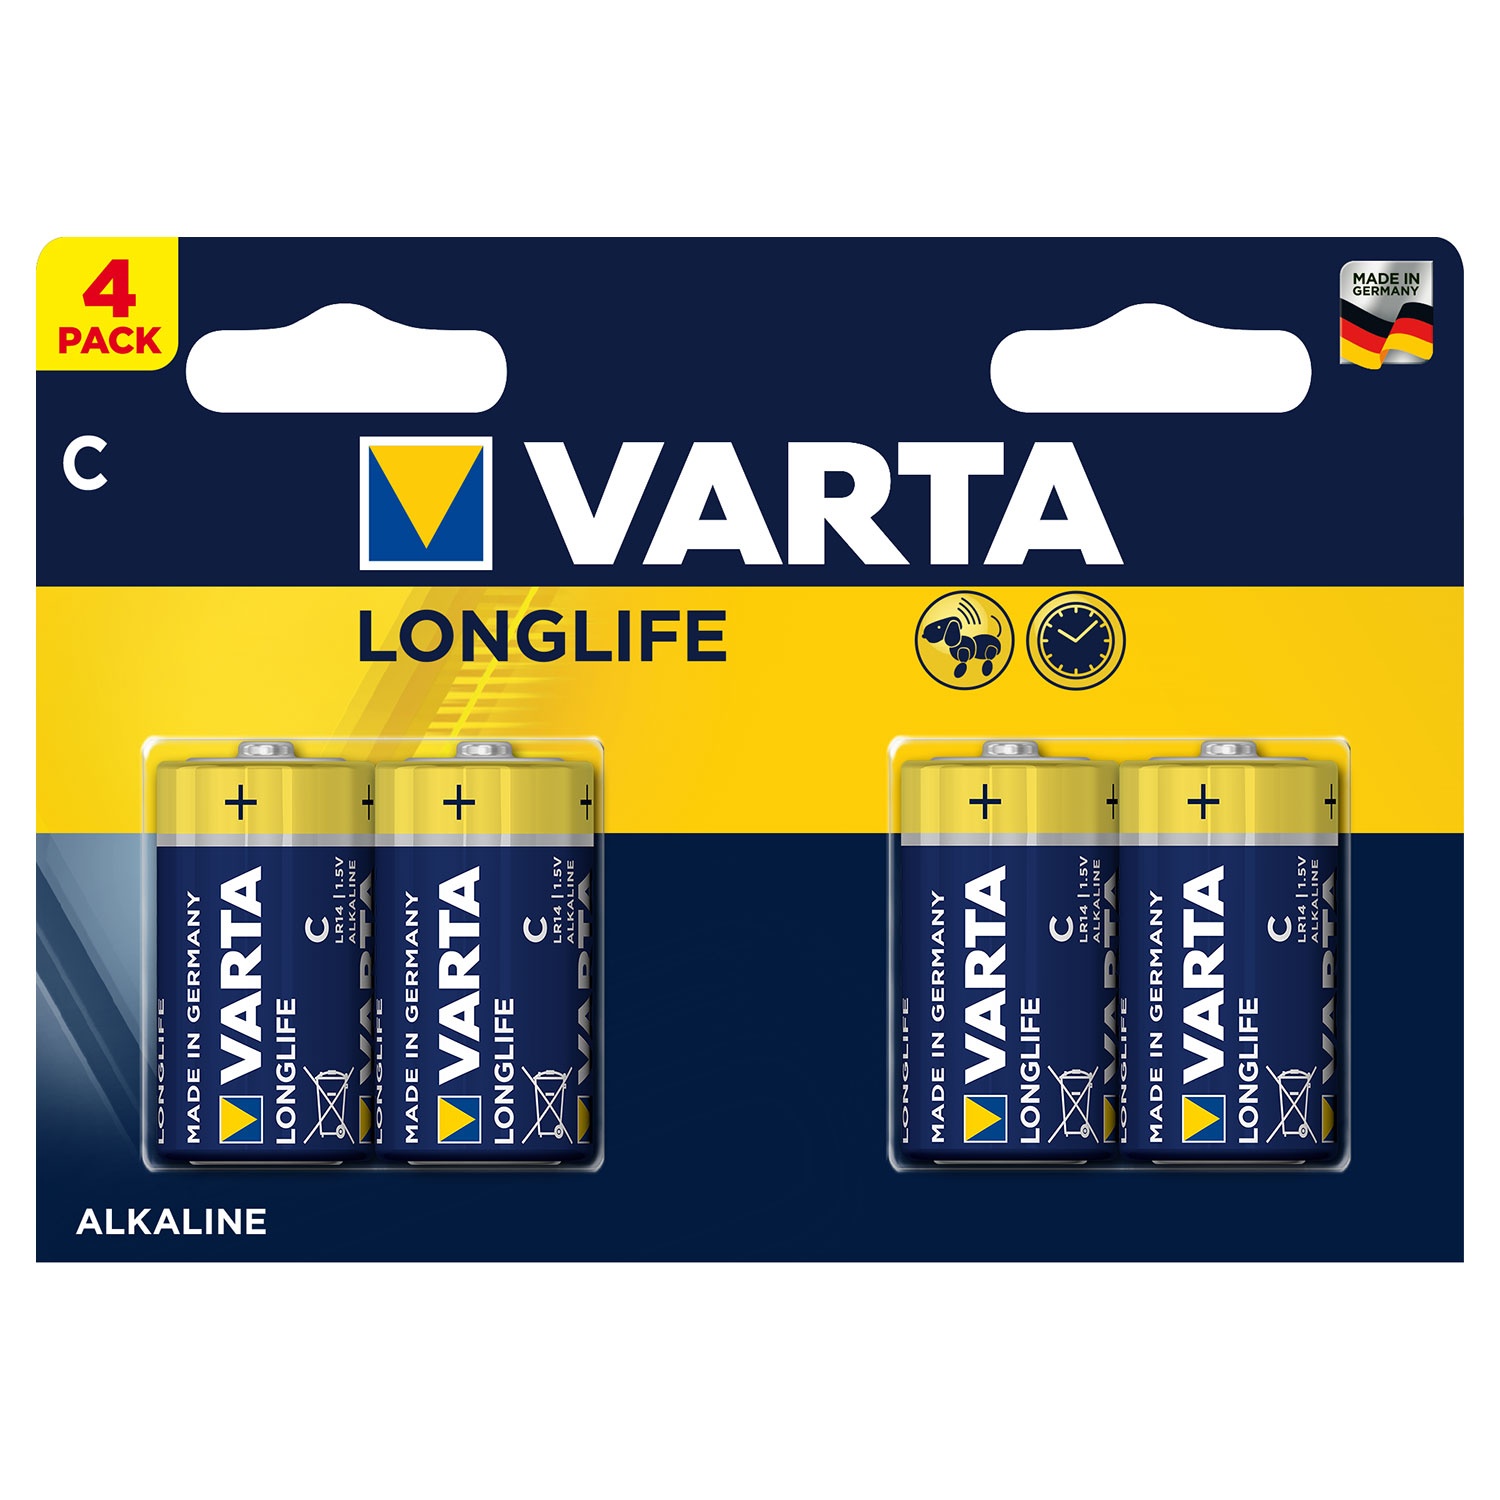 VARTA Lithium-Knopfzellen oder Alkaline-Batterien